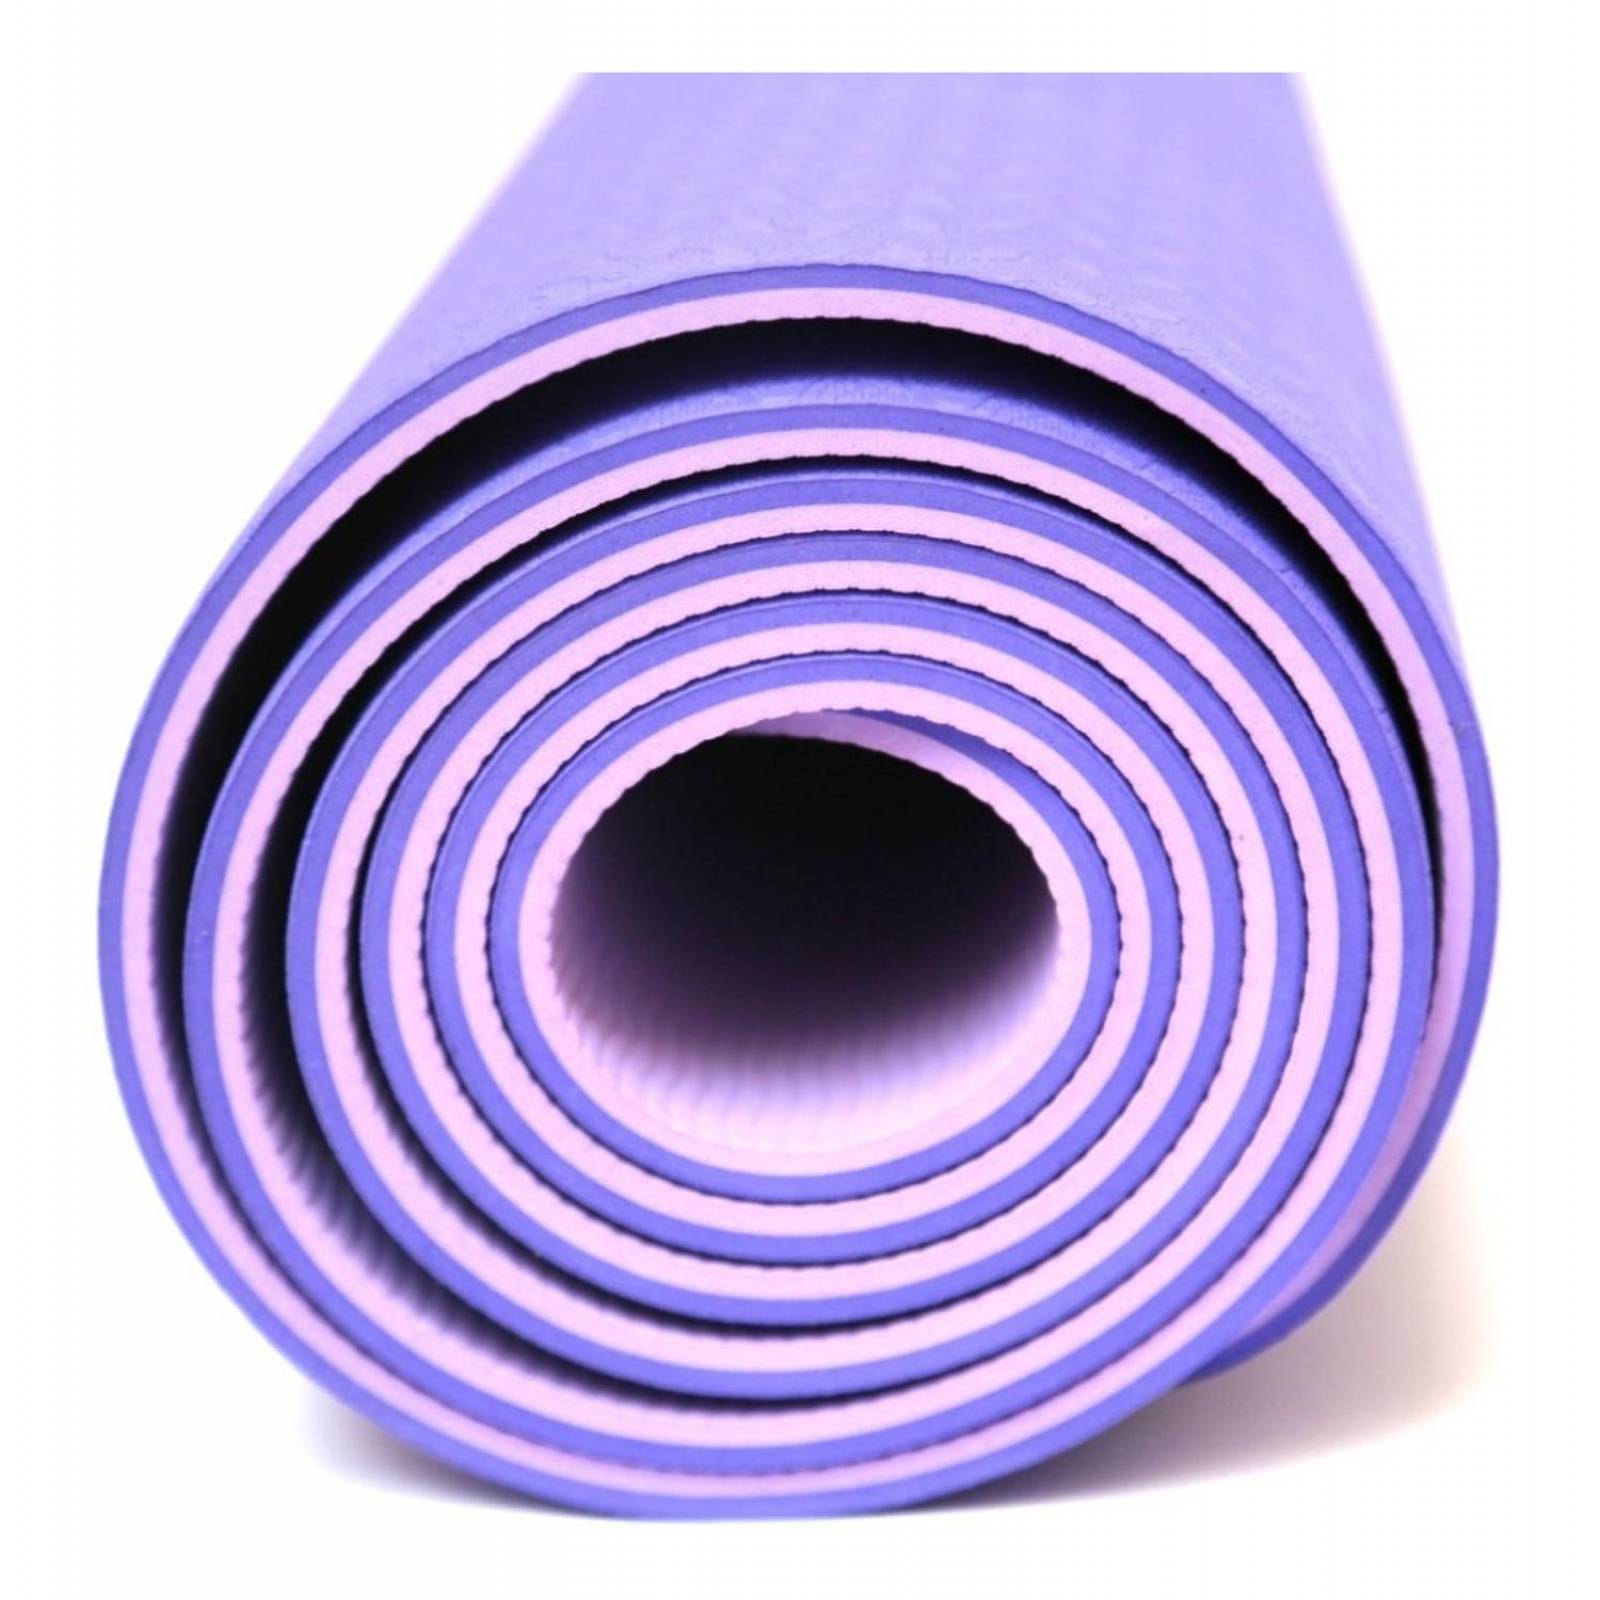 Colchoneta Yoga Mat Pilates Tapete Gimnasio de 6mm (color morado)